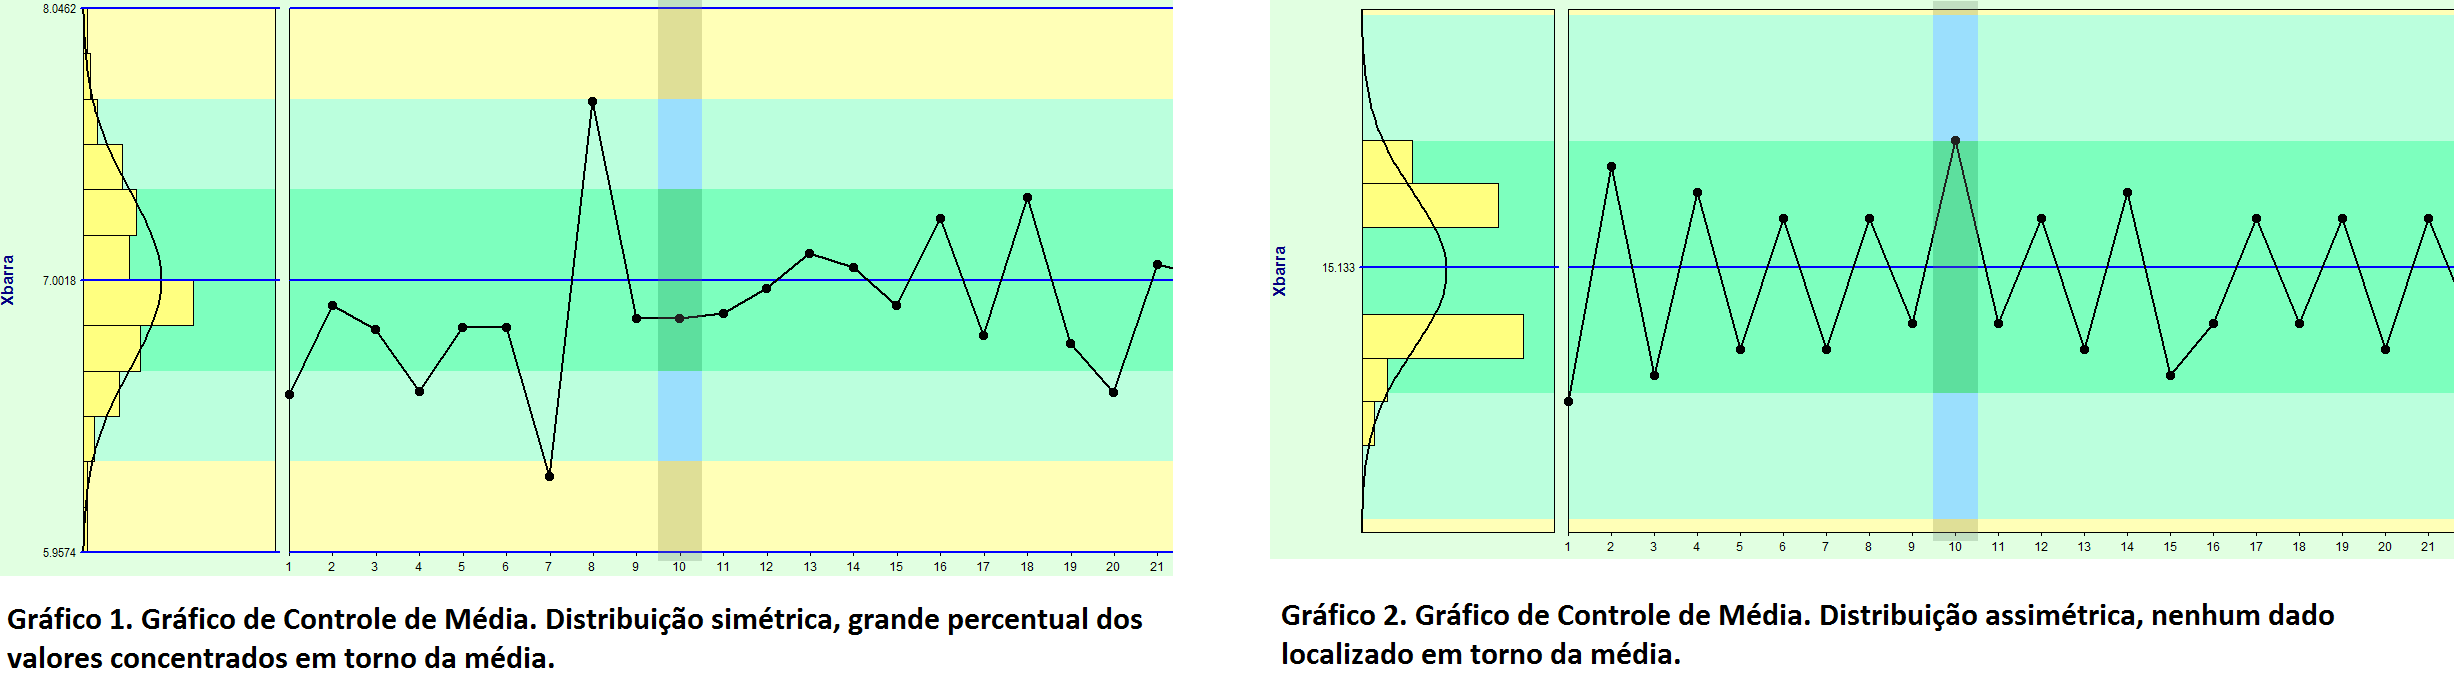 grafico de controle simétrico x assimétrico